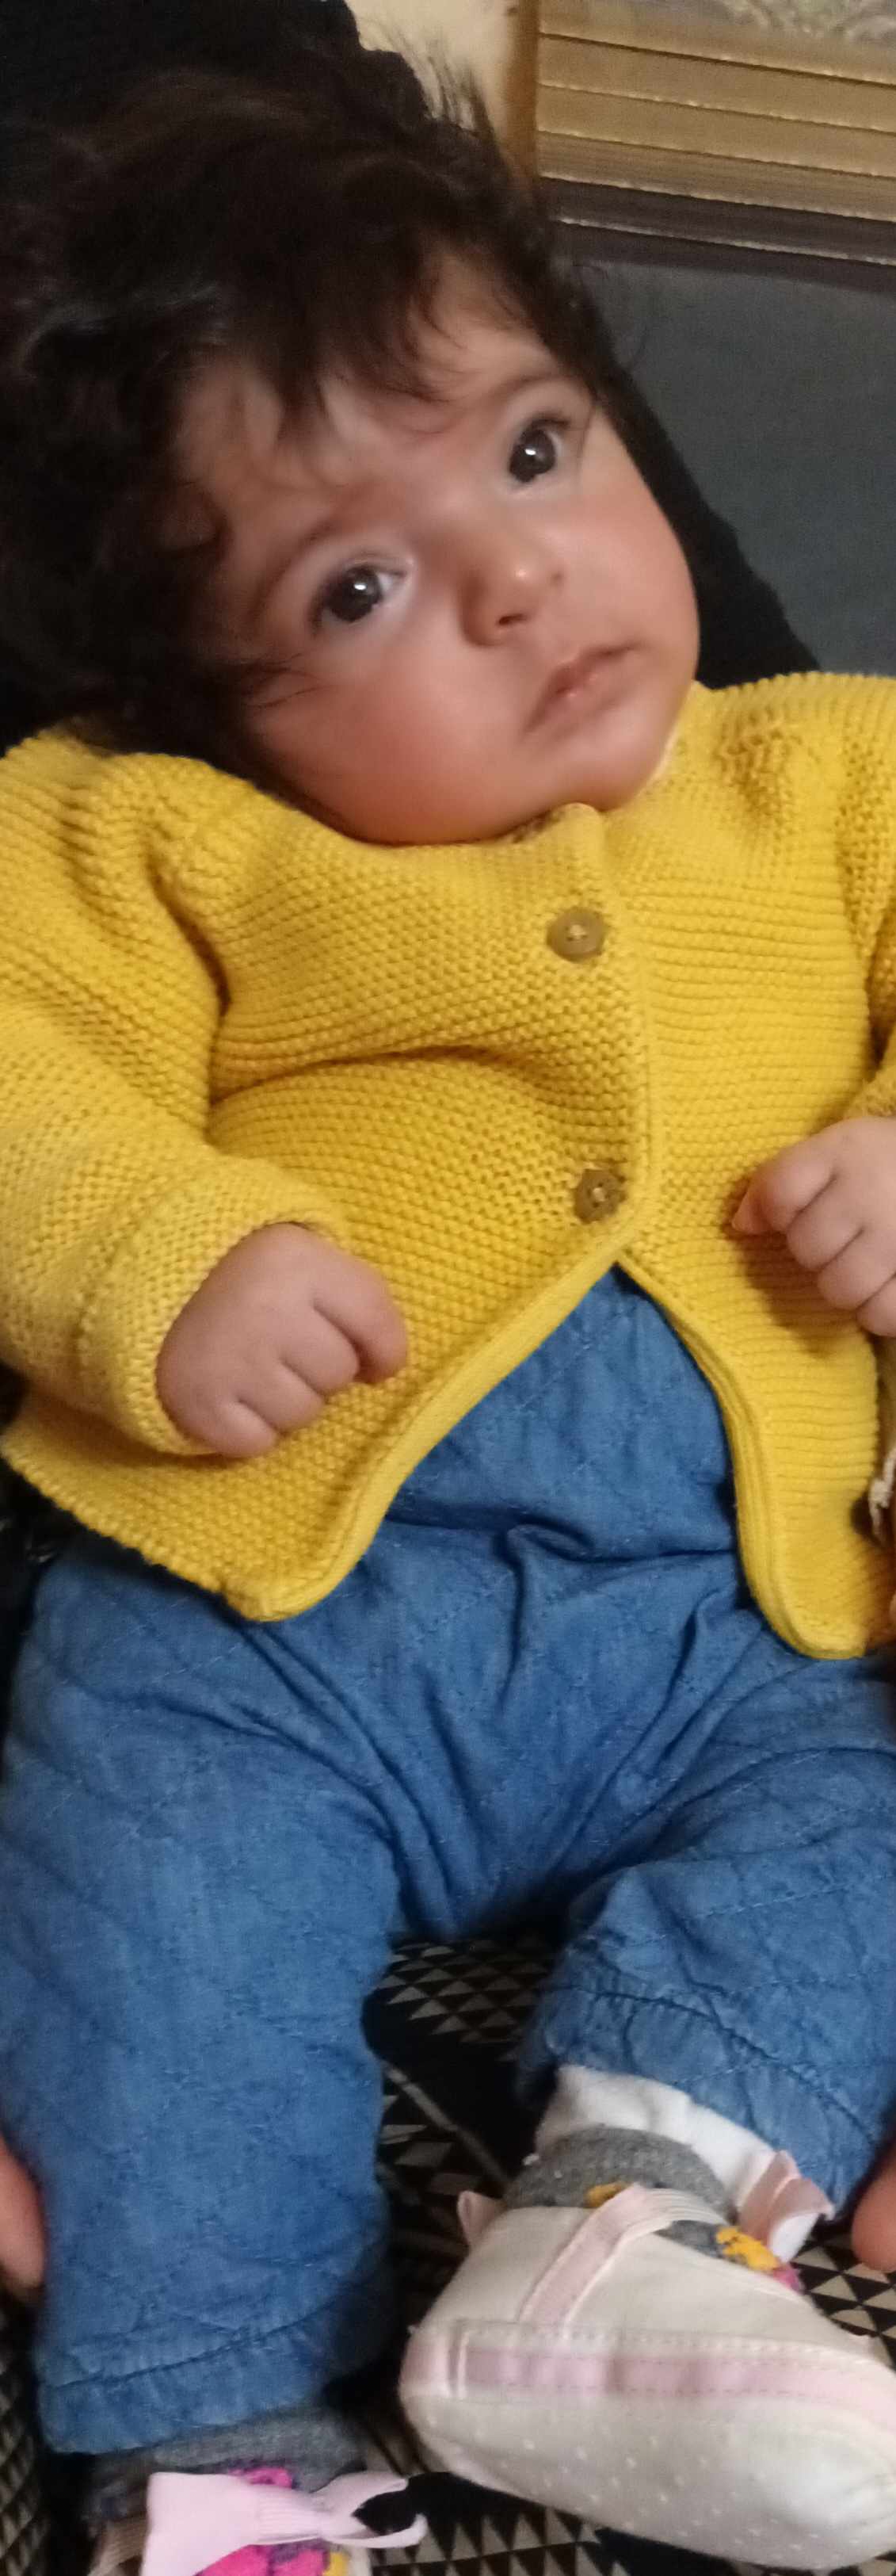 طفلي يميل رأسه لليمين من الولادة